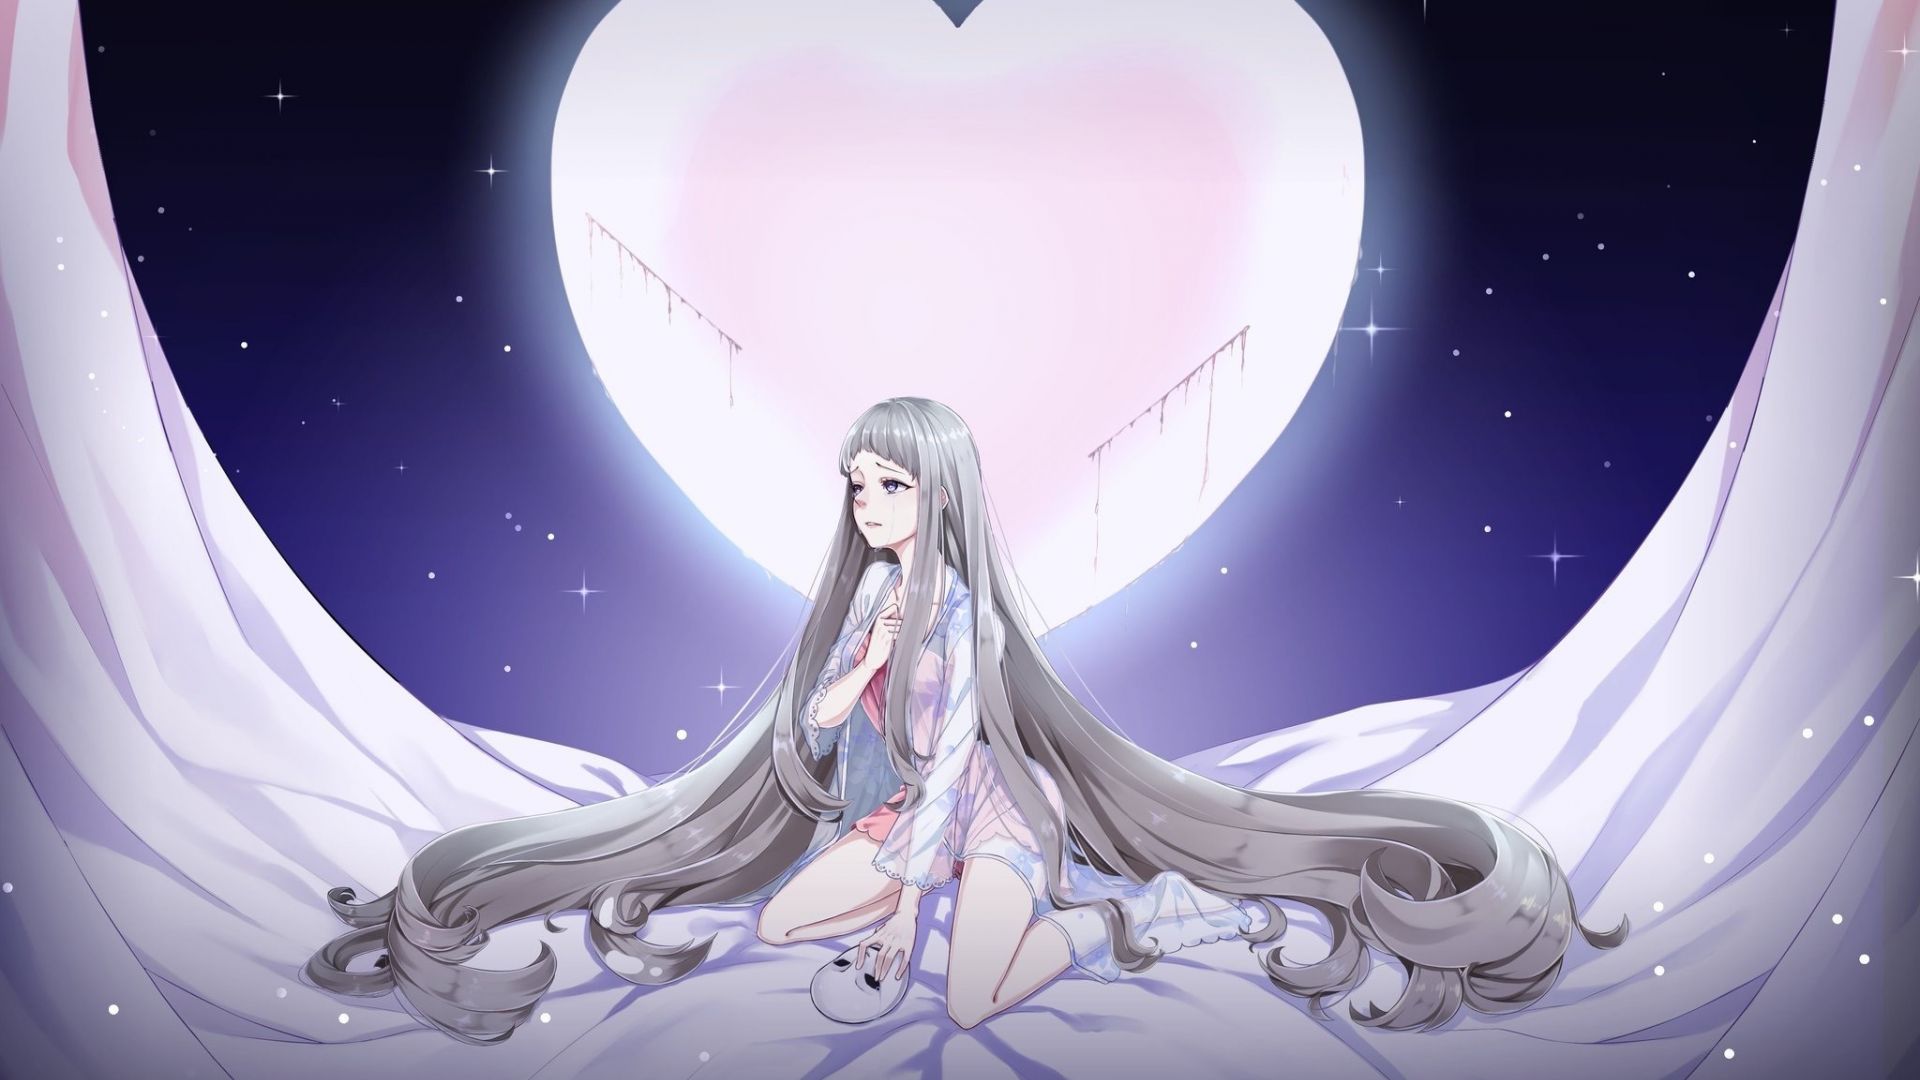 Crying Anime Moon Girl - HD Wallpaper 